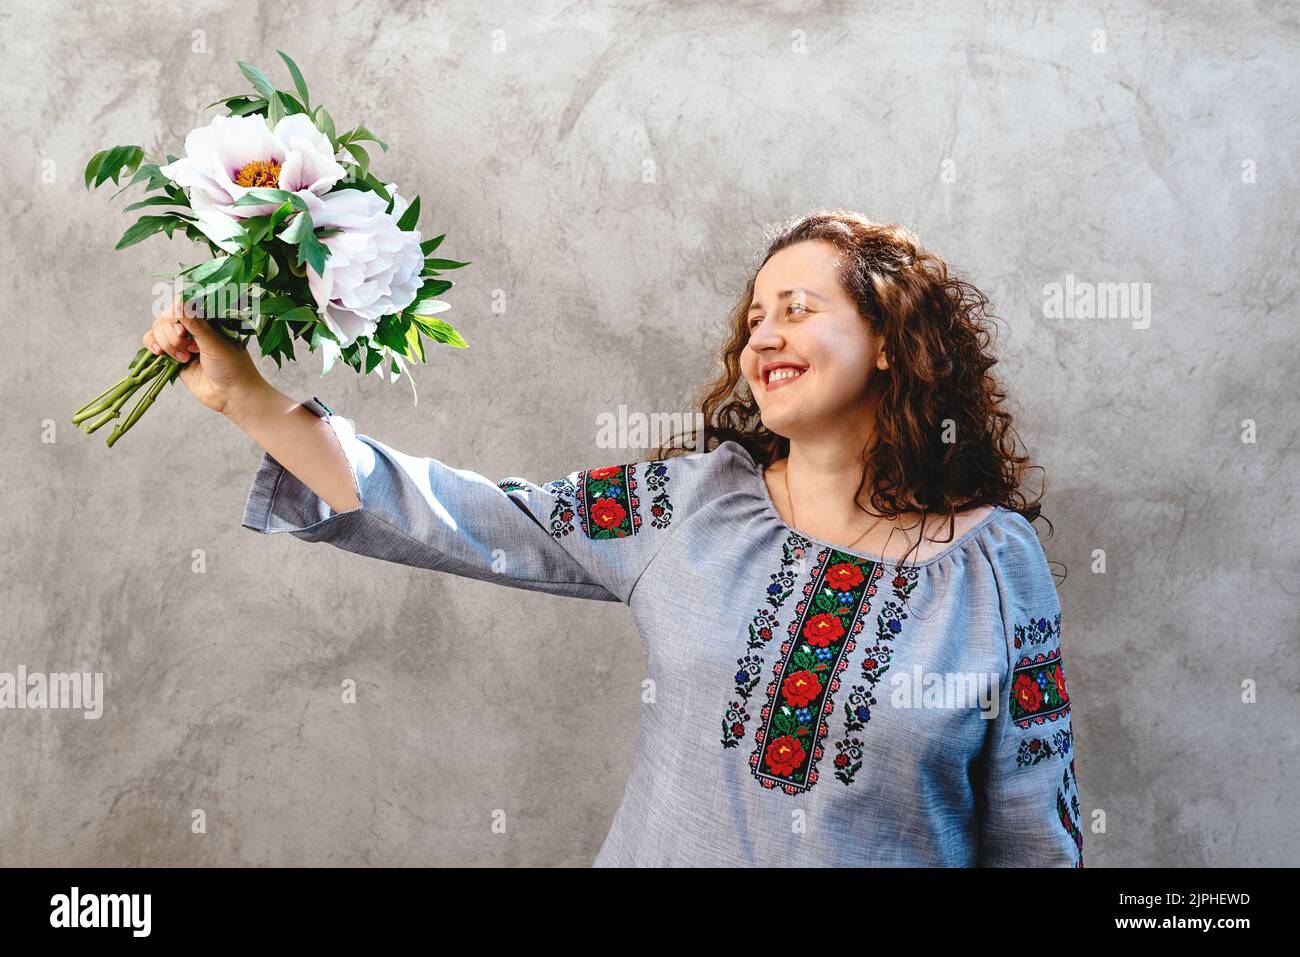 La ragazza sorridente sta tenendo il bouquet delle peonies rosa. La donna indossa una tradizionale camicia Ucraina ricamata sullo sfondo di una parete di cemento. Giornata dell'indipendenza dell'Ucraina. Spazio di copia. Messa a fuoco morbida Foto Stock